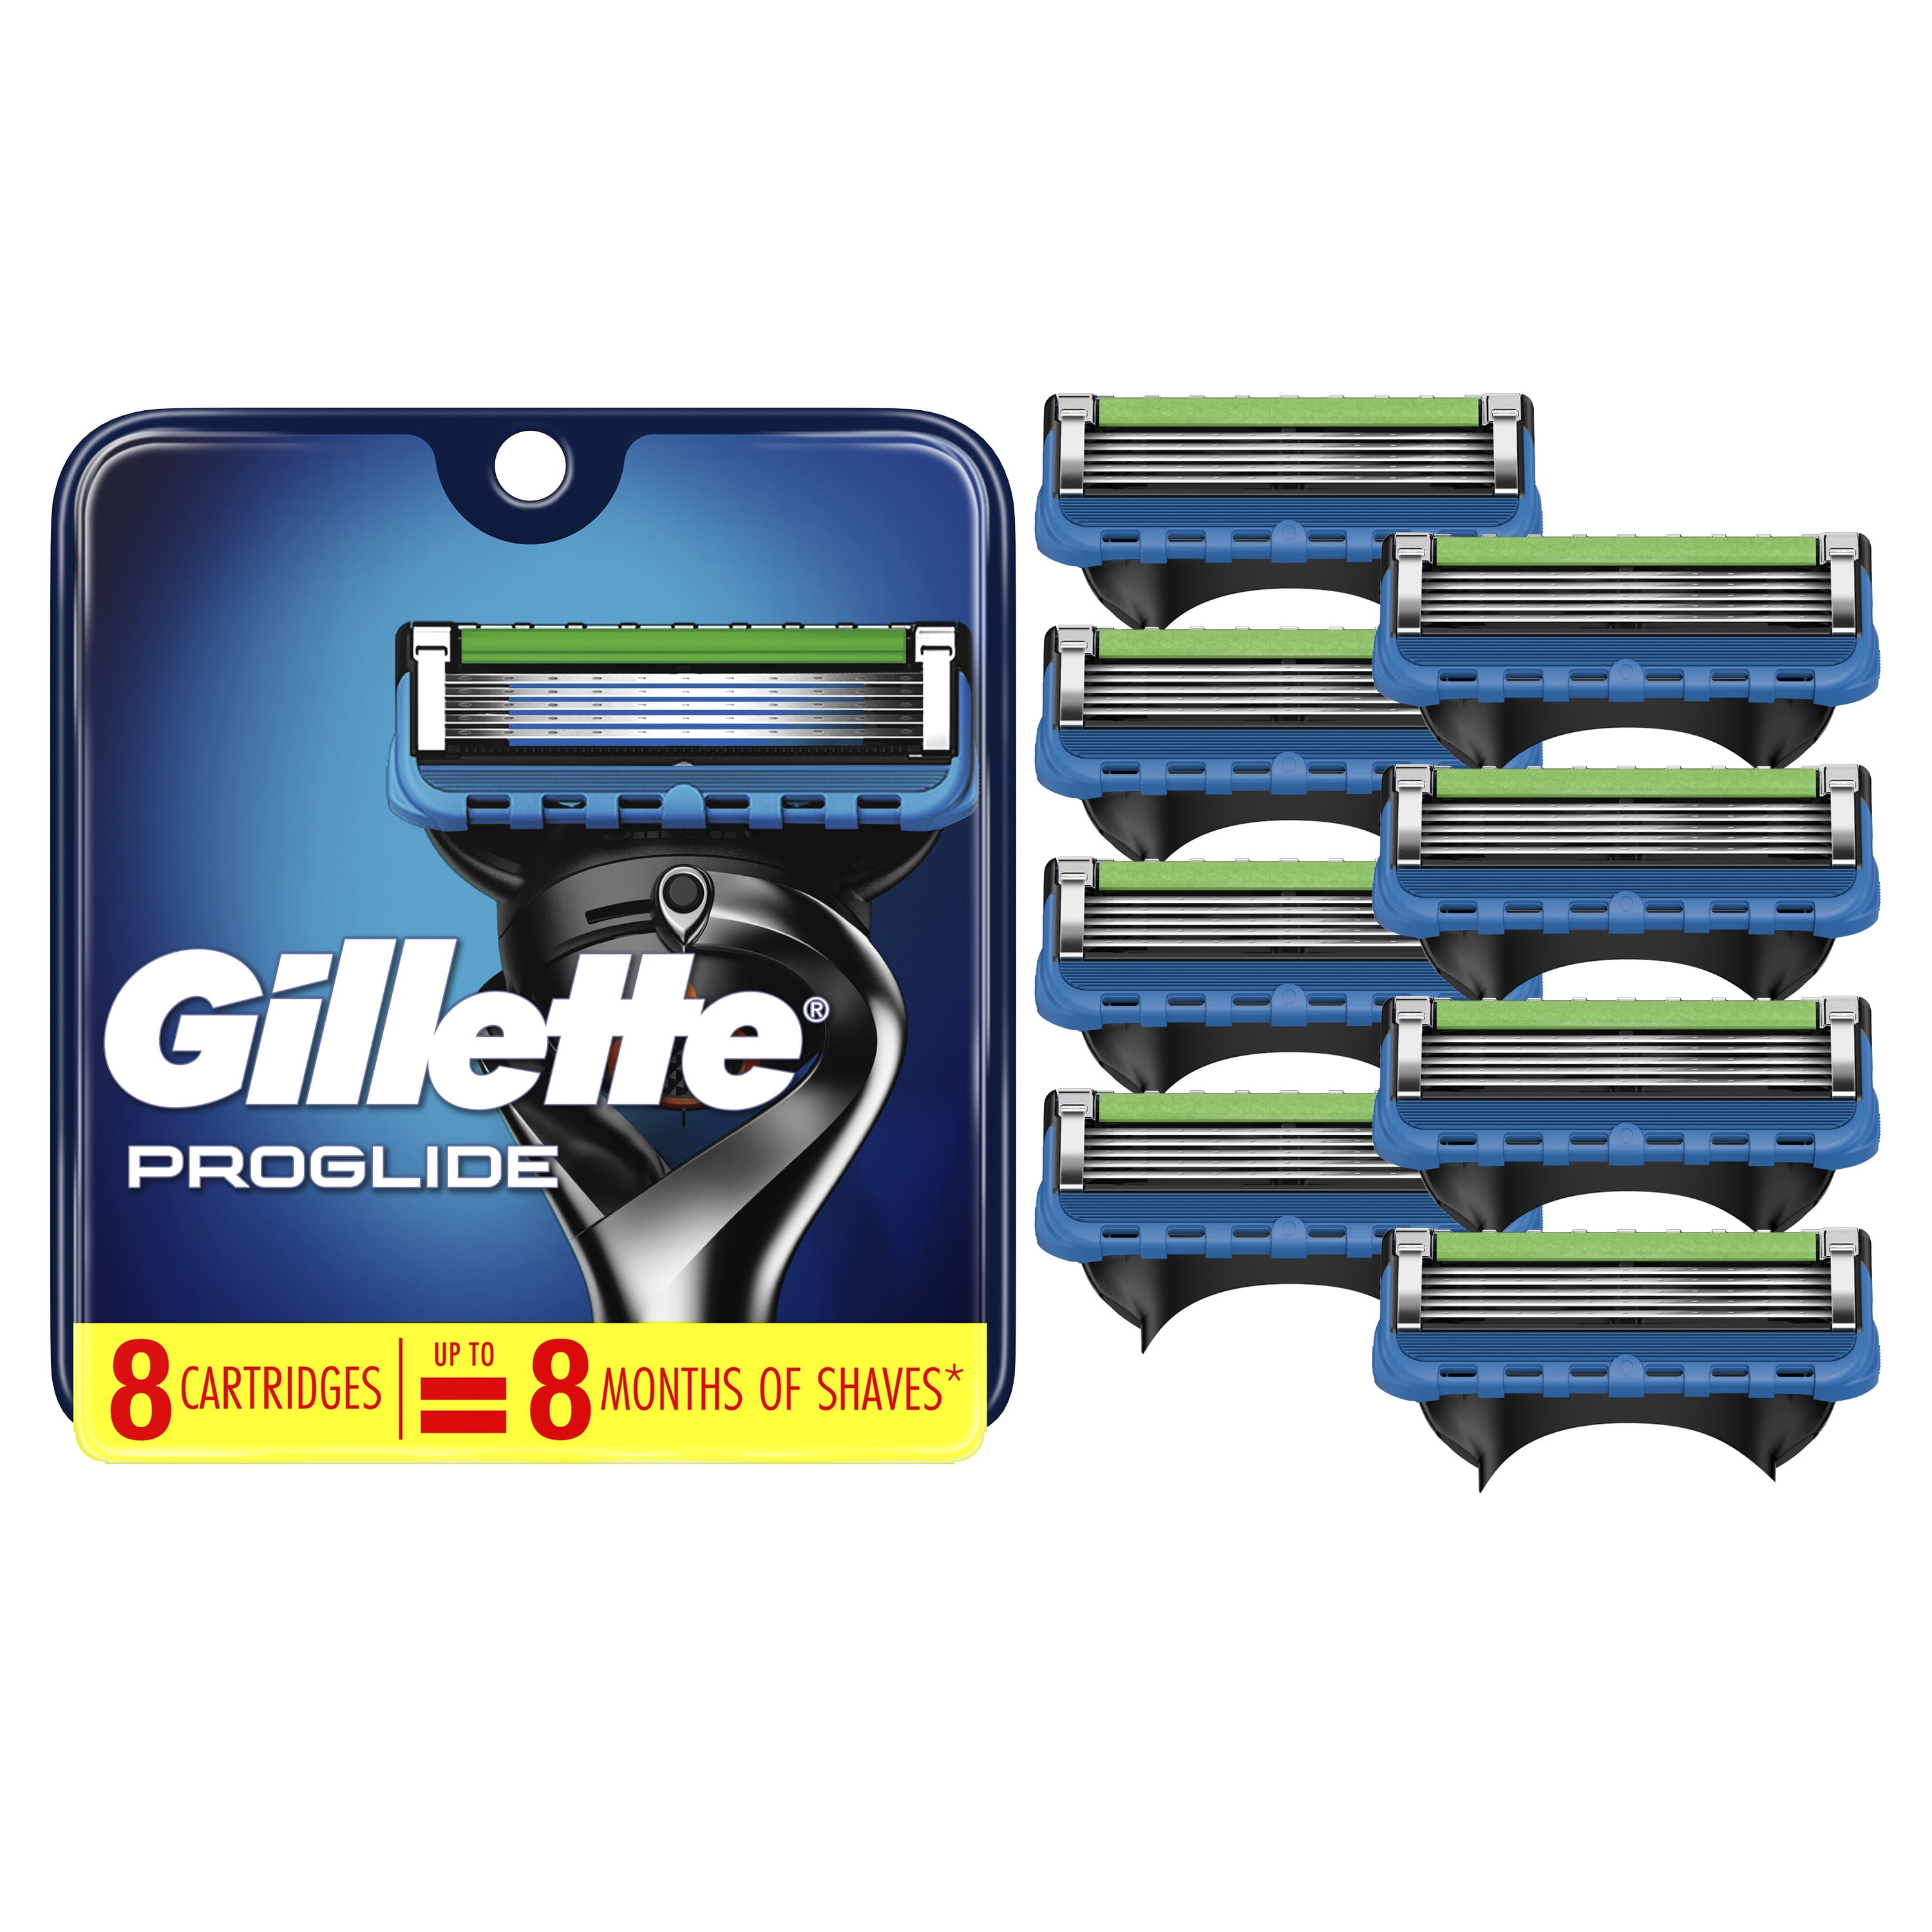 Gillette Men's Razor 8 Blade Refills Walmart.com